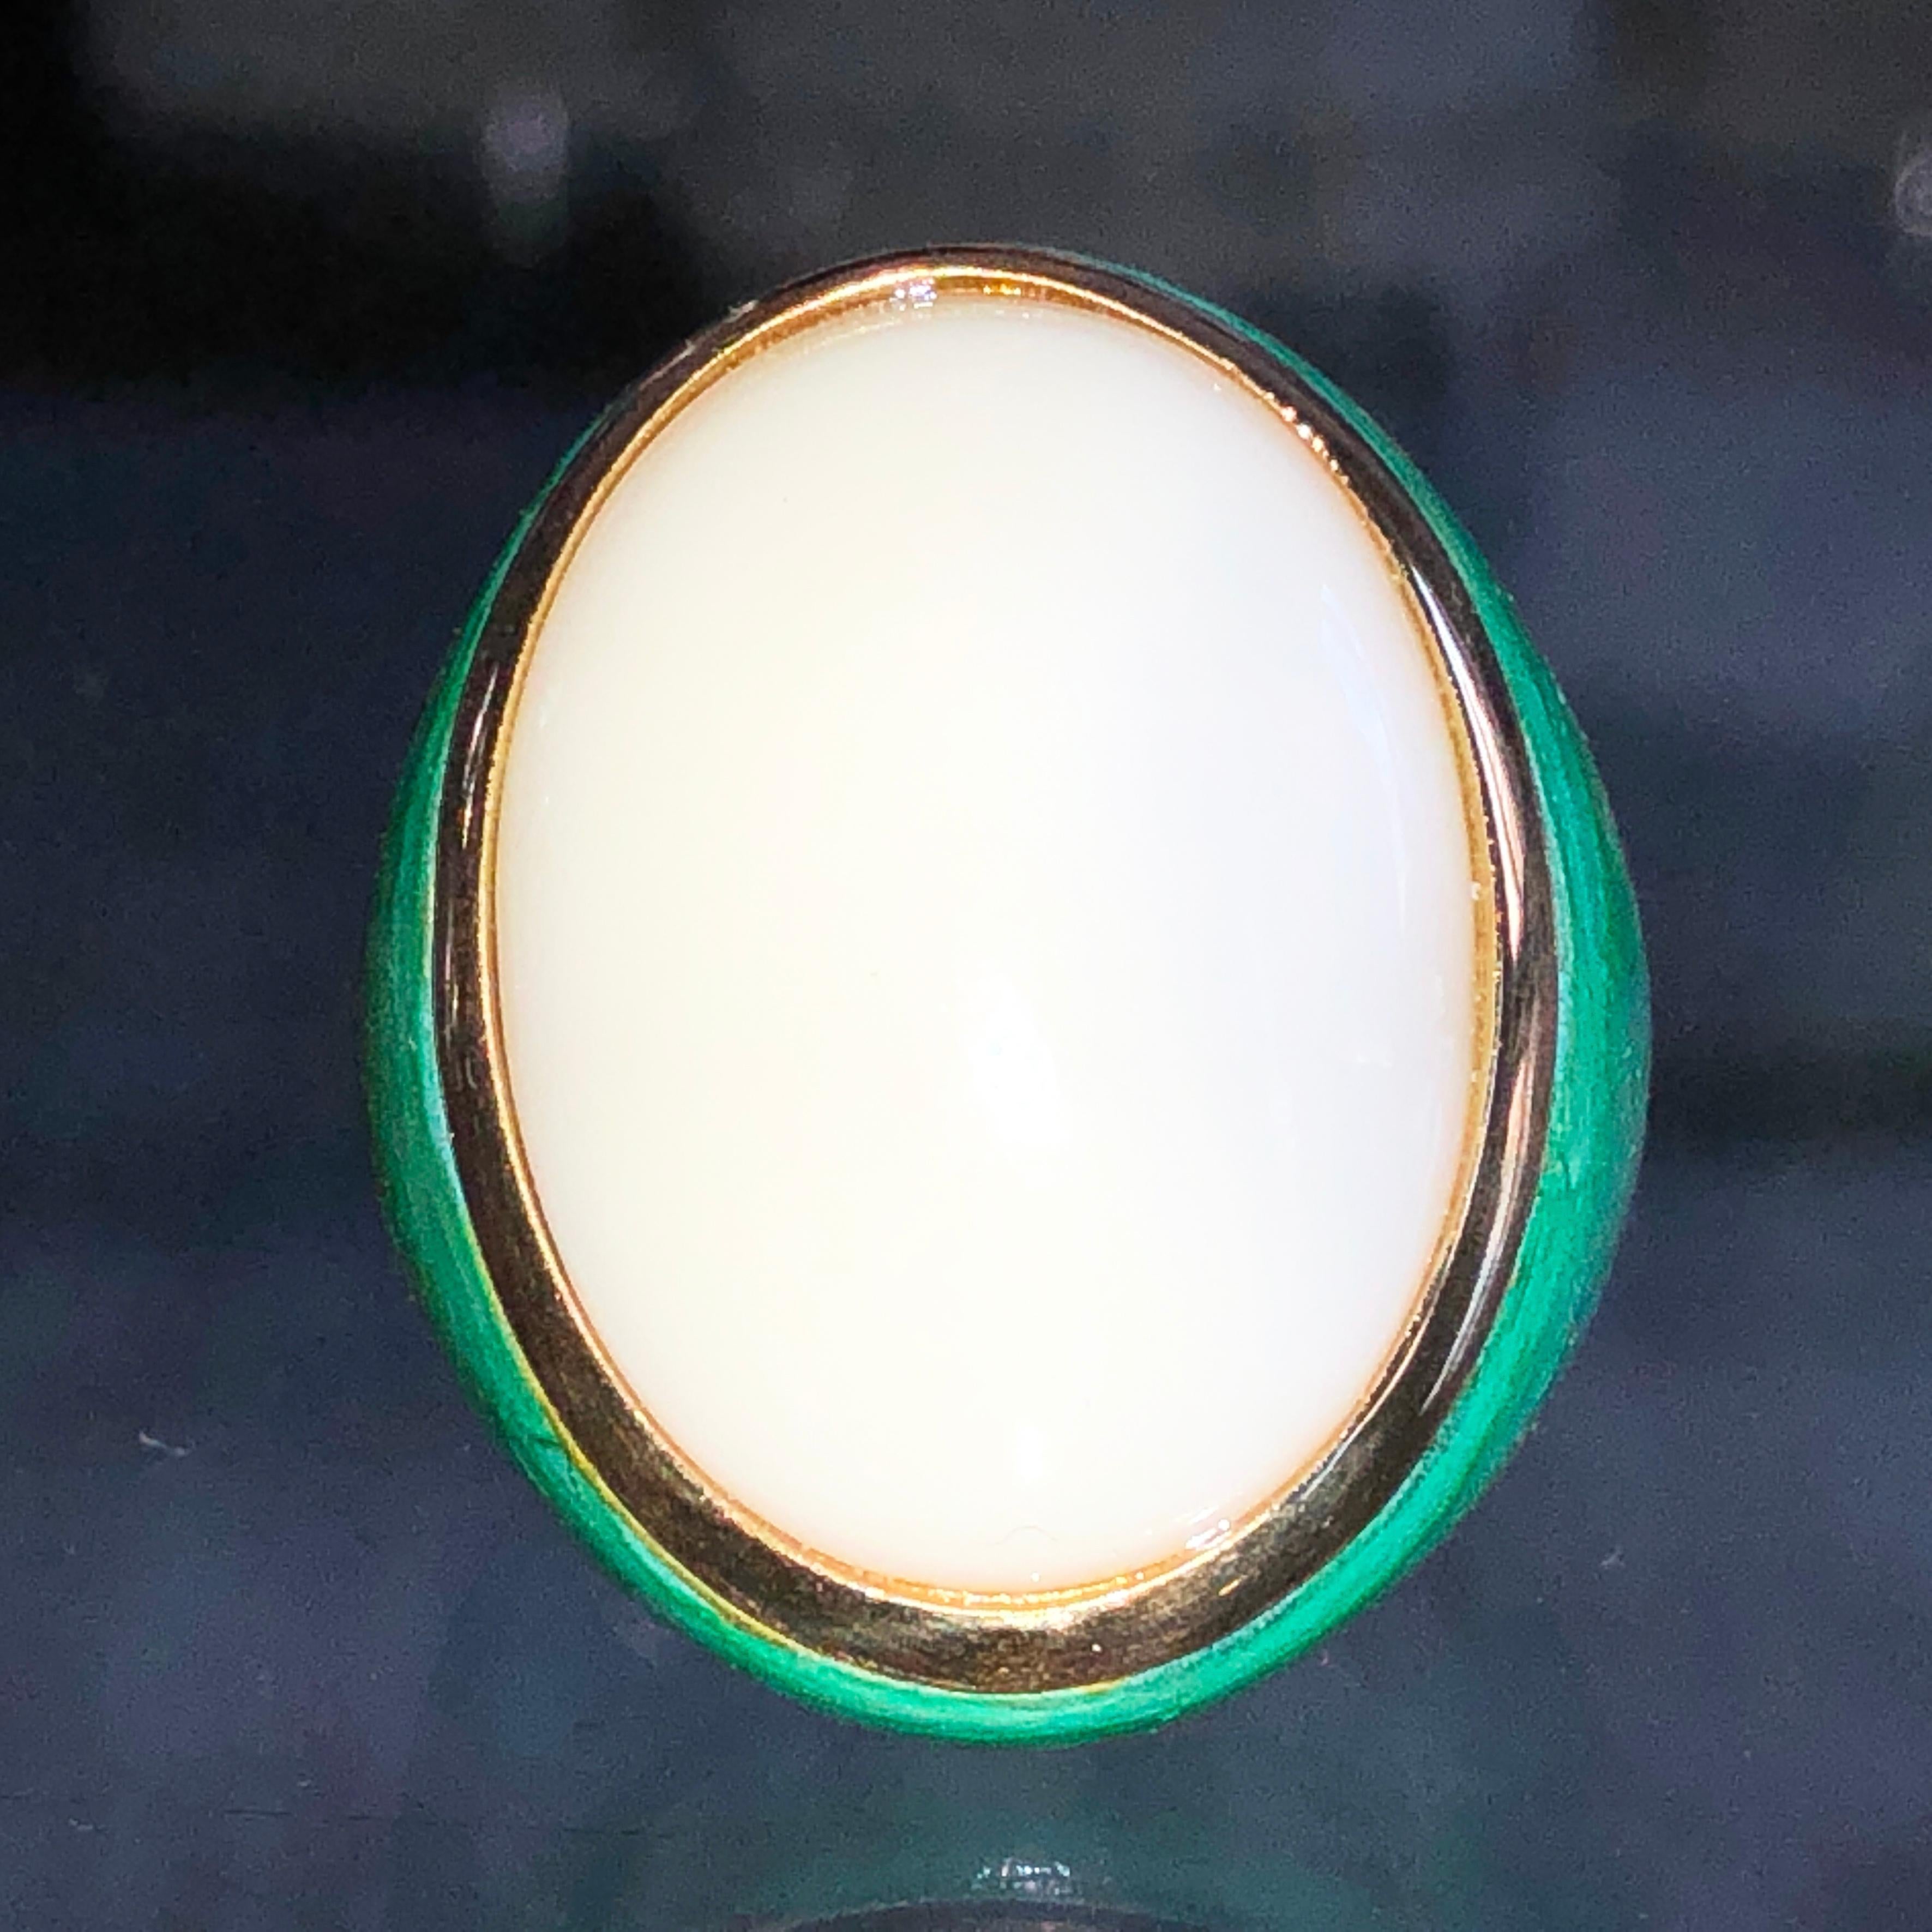 Bague de cocktail contemporaine unique en son genre, ornée d'un cabochon d'opale blanche naturelle de 20 carats (0,911x0,666in) dans une monture en or jaune 18 carats turquoise-vert oxydée à la main.
Le changement de couleur du cabochon de l'opale